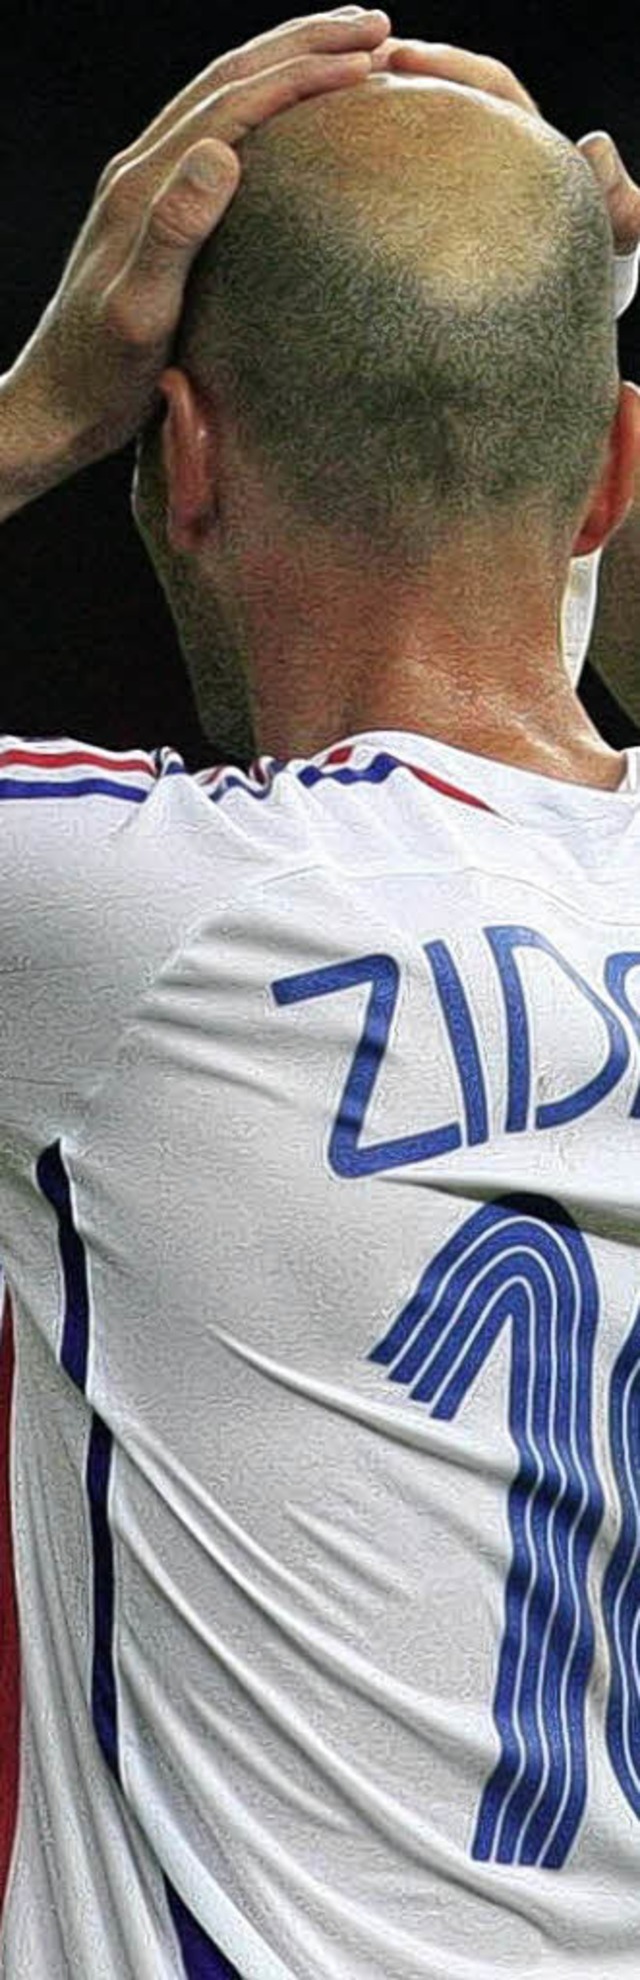 Von schlechten Nachrichten wollte auch Zinedine Zidane offenbar nichts wissen.   | Foto: ddp